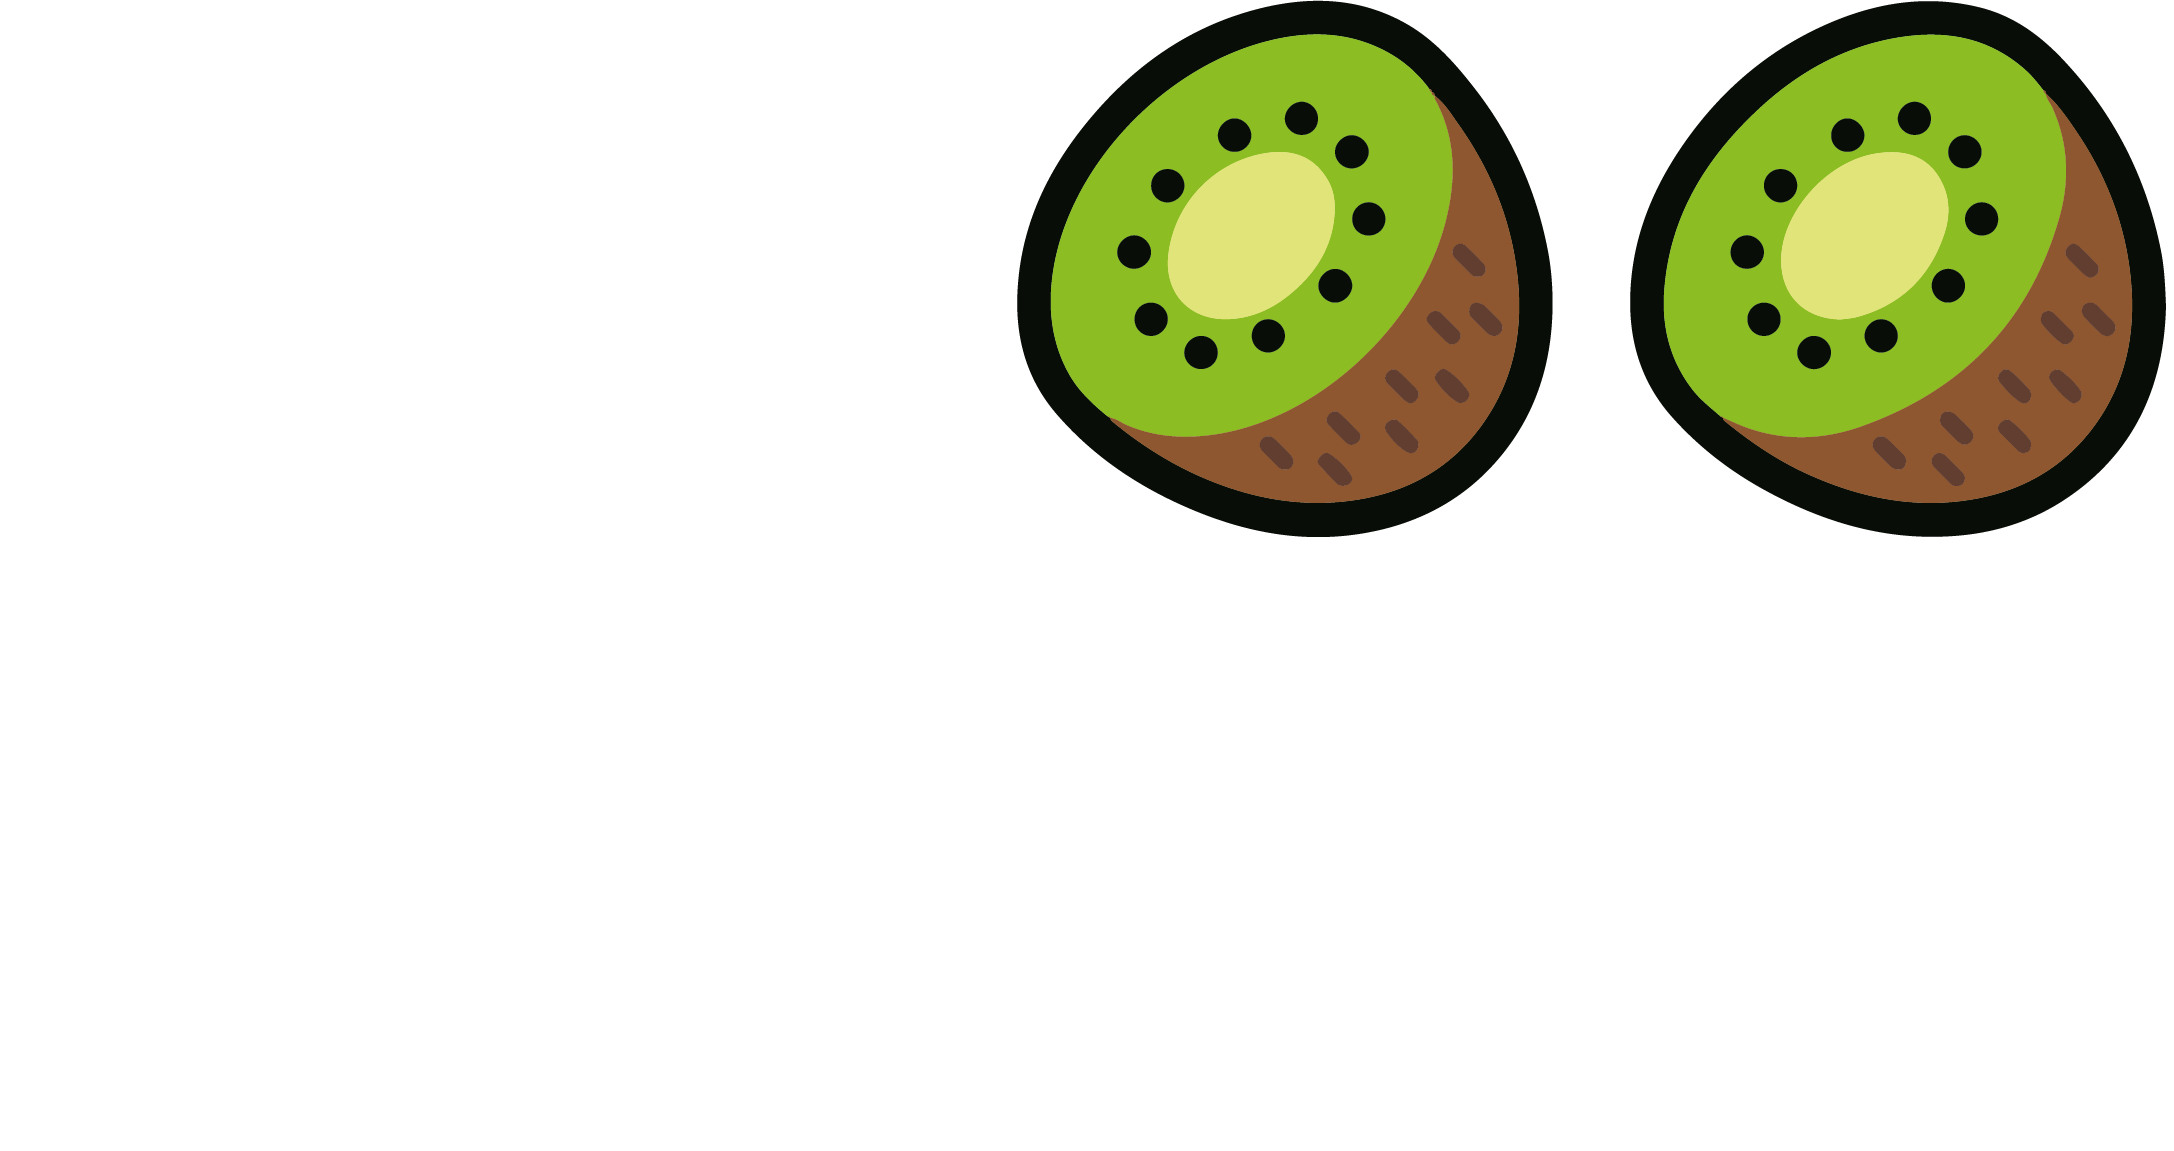 Le Kiwizz